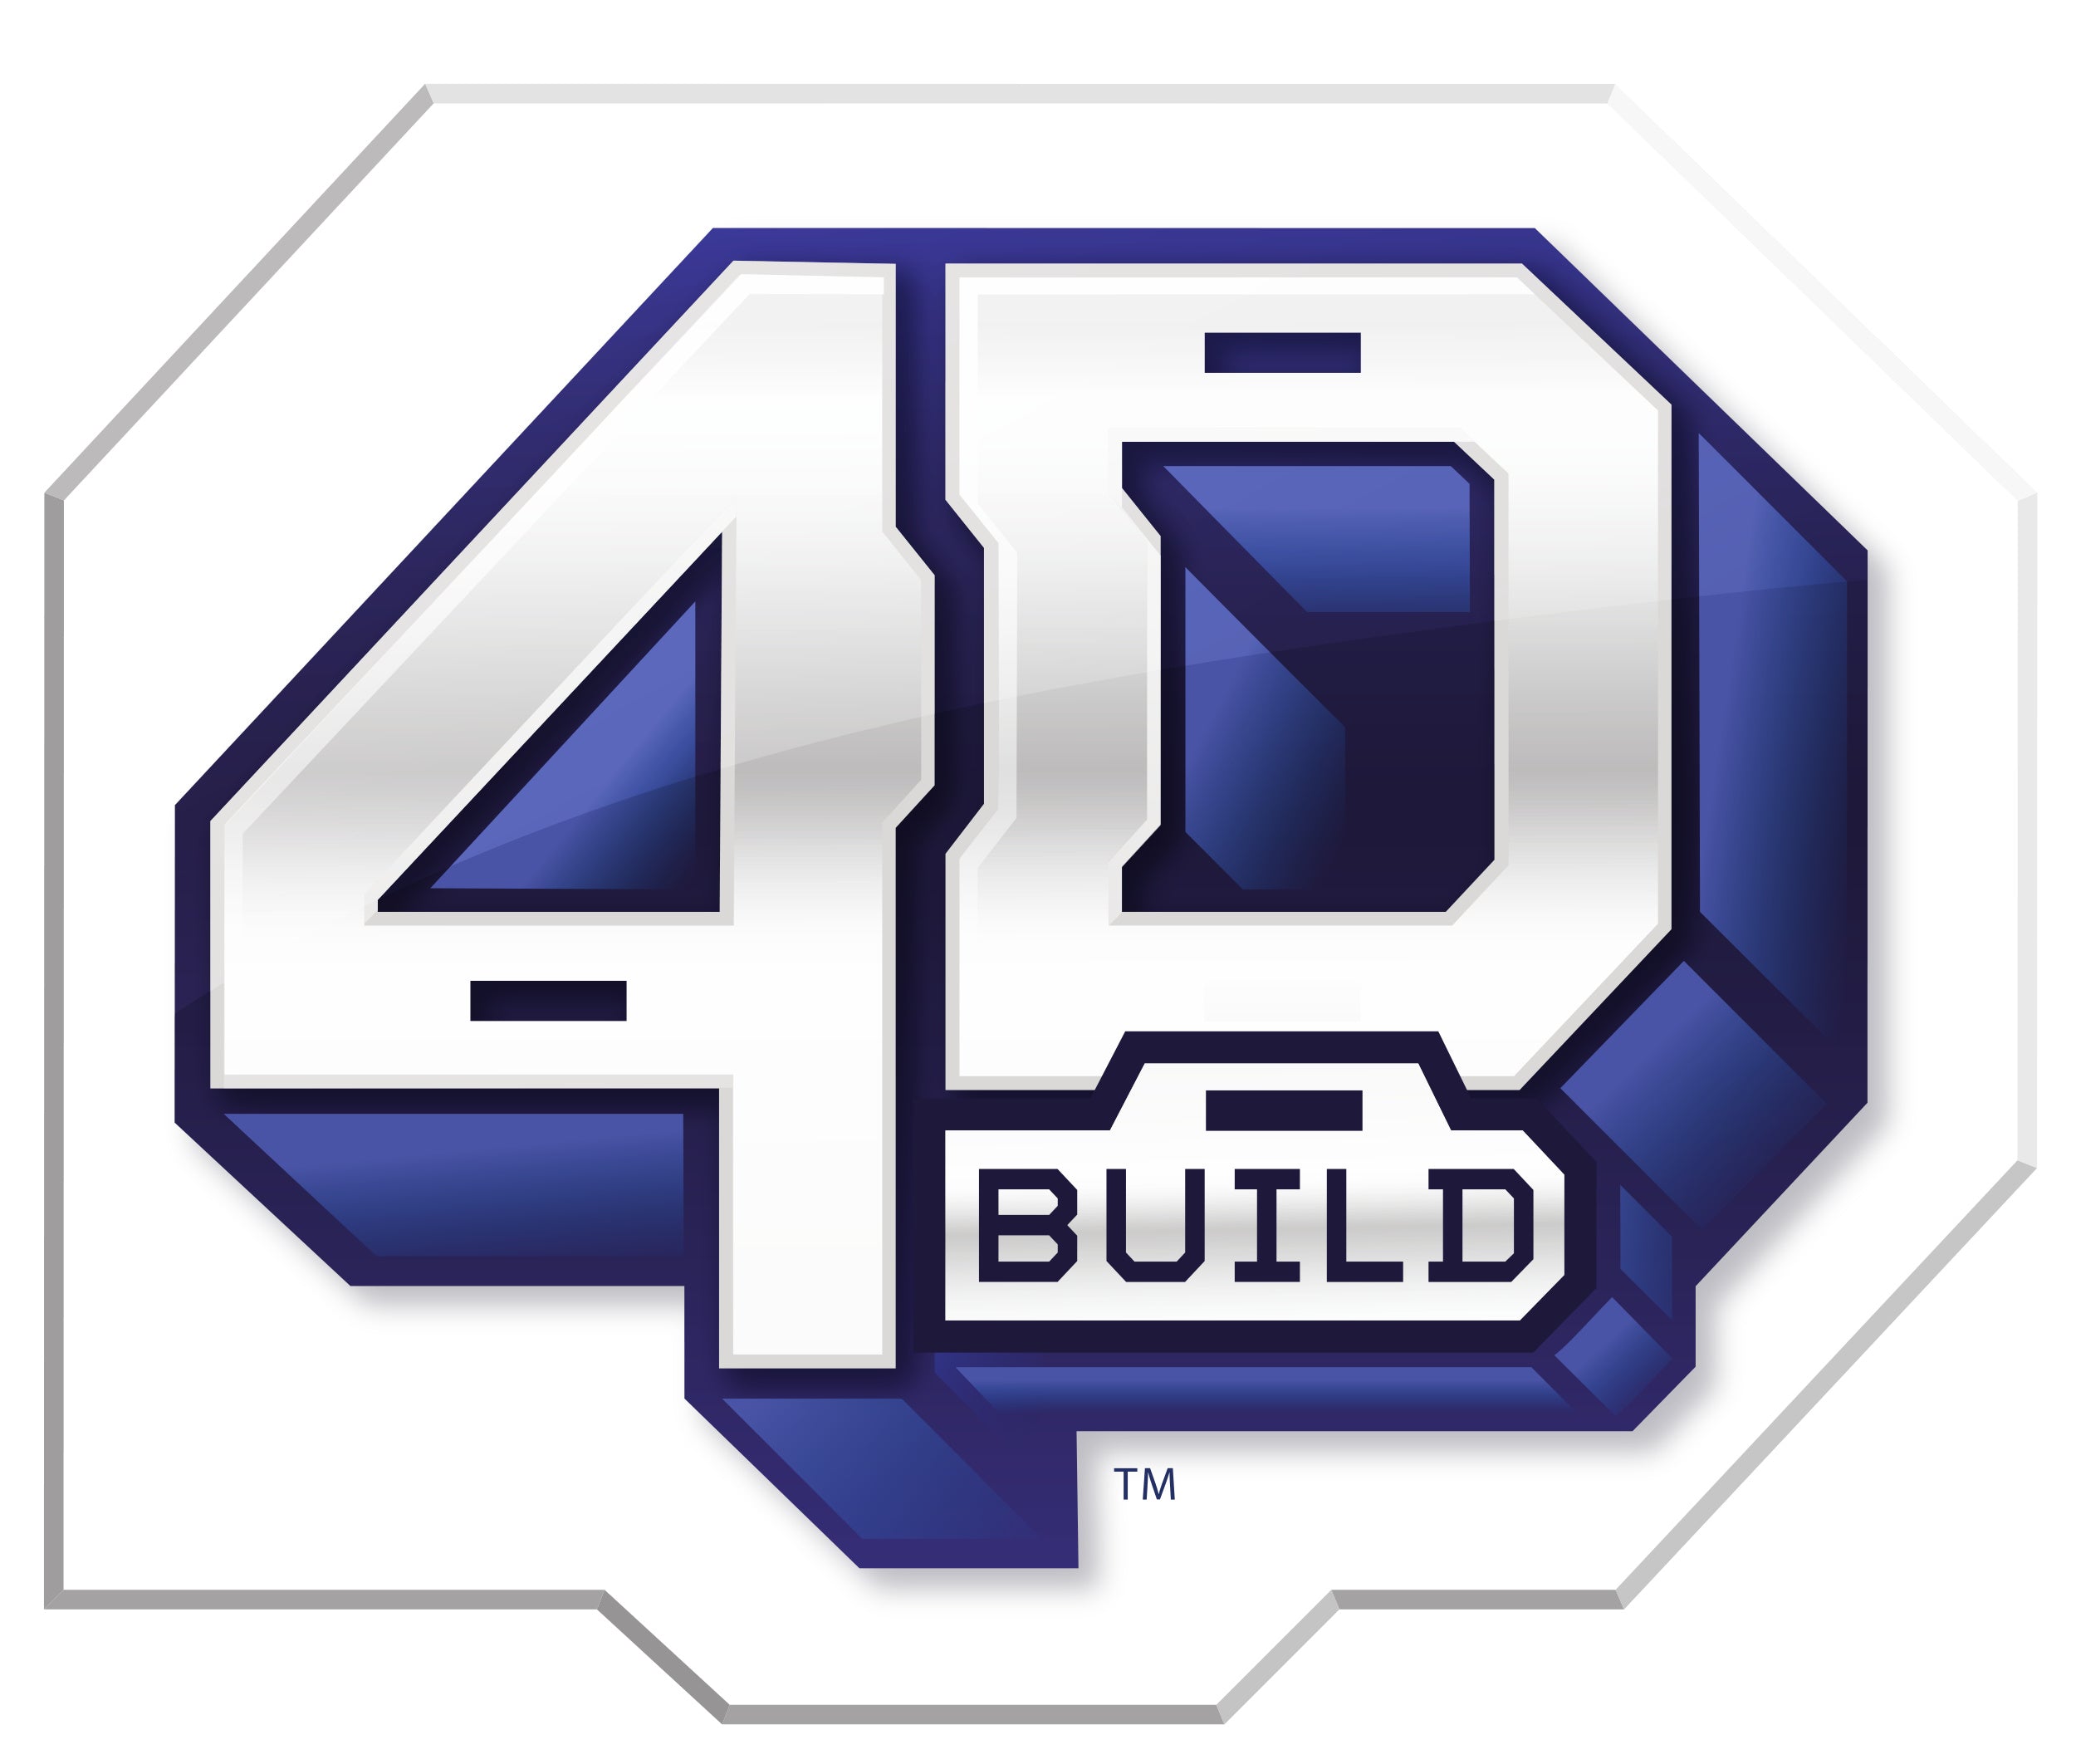 4D Build